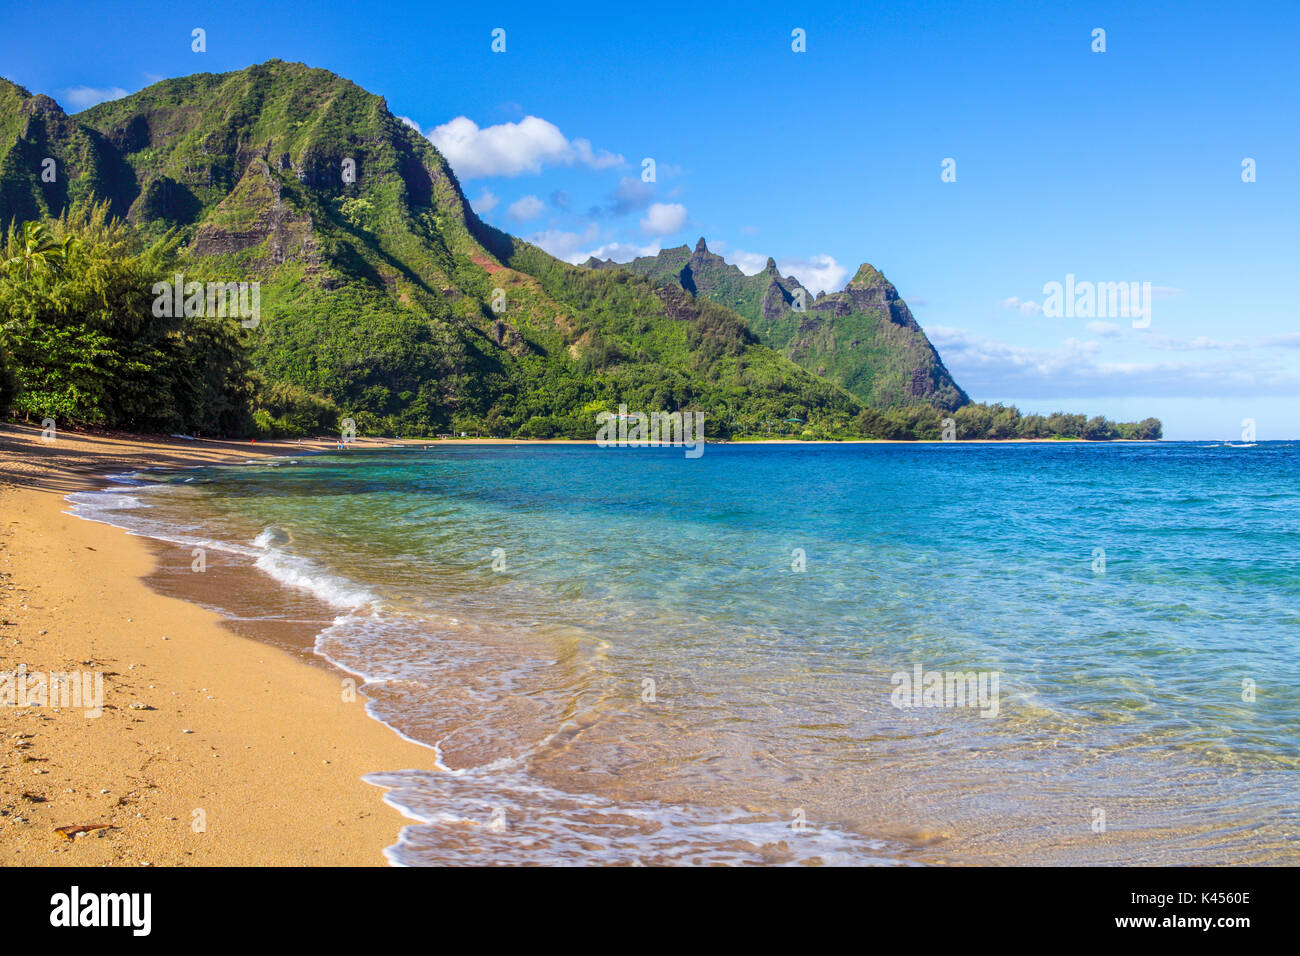 Impresionantes vistas de Playa en haena, Kauai, con túneles playa, haena Beach Park y mt. makena, llamado Bali Hai, en distancia Foto de stock